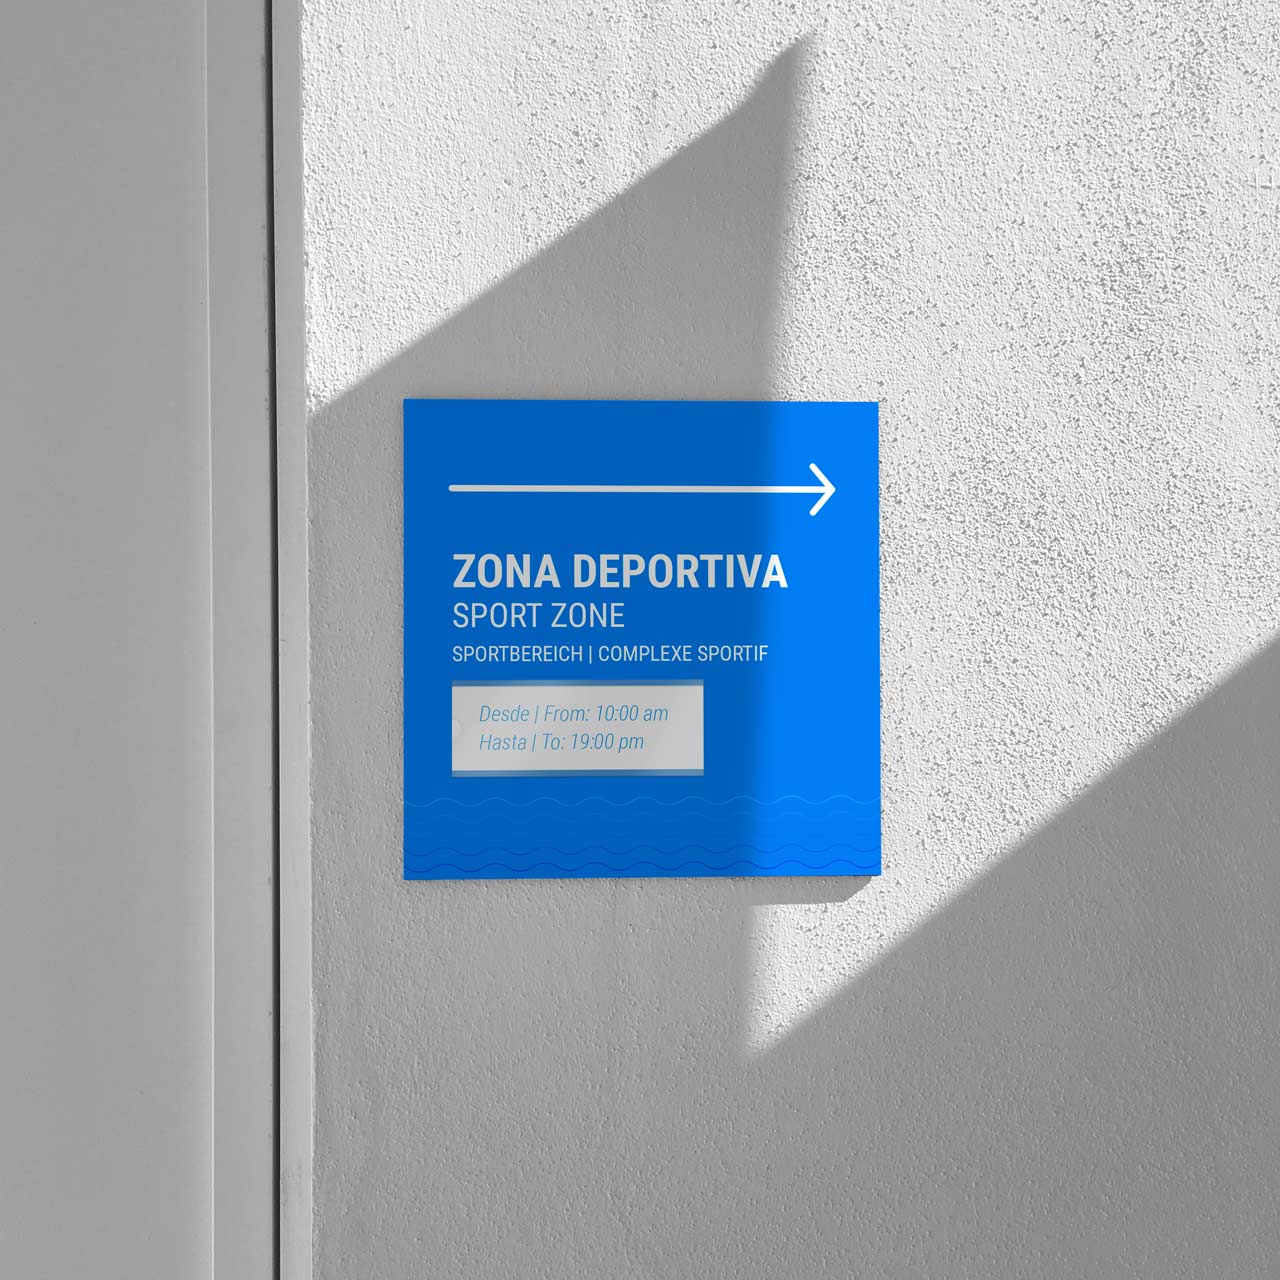 Señalética del Hotel Hovima Costa Adeje: señal direccional para la zona deportiva.